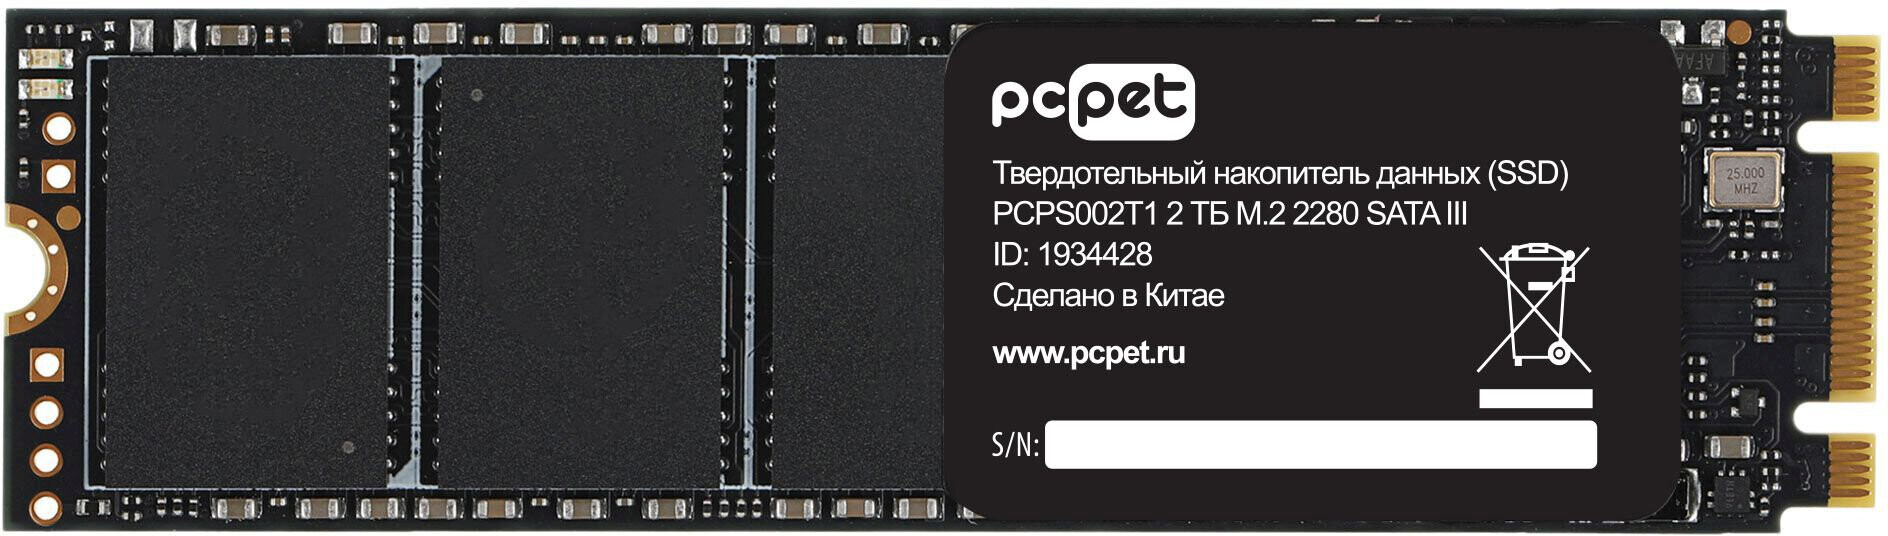 SSD накопитель PC Pet SATA III 2Tb (PCPS002T1)